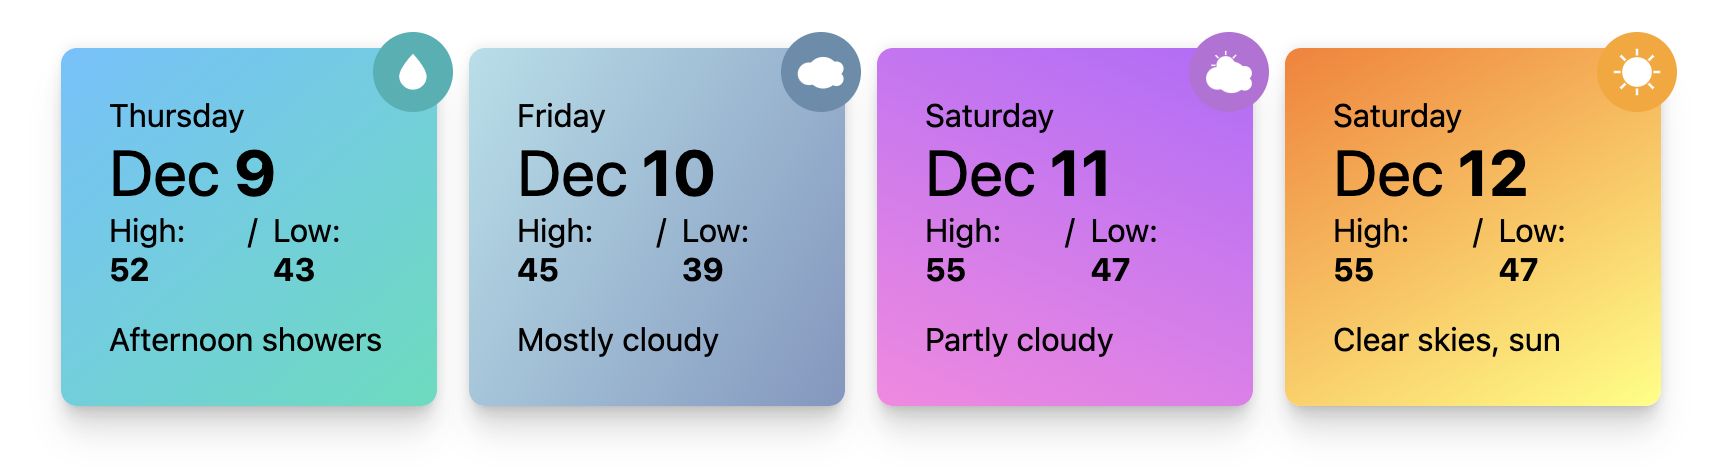 Демо-скриншот для запросов контейнера стилей погодных карточек